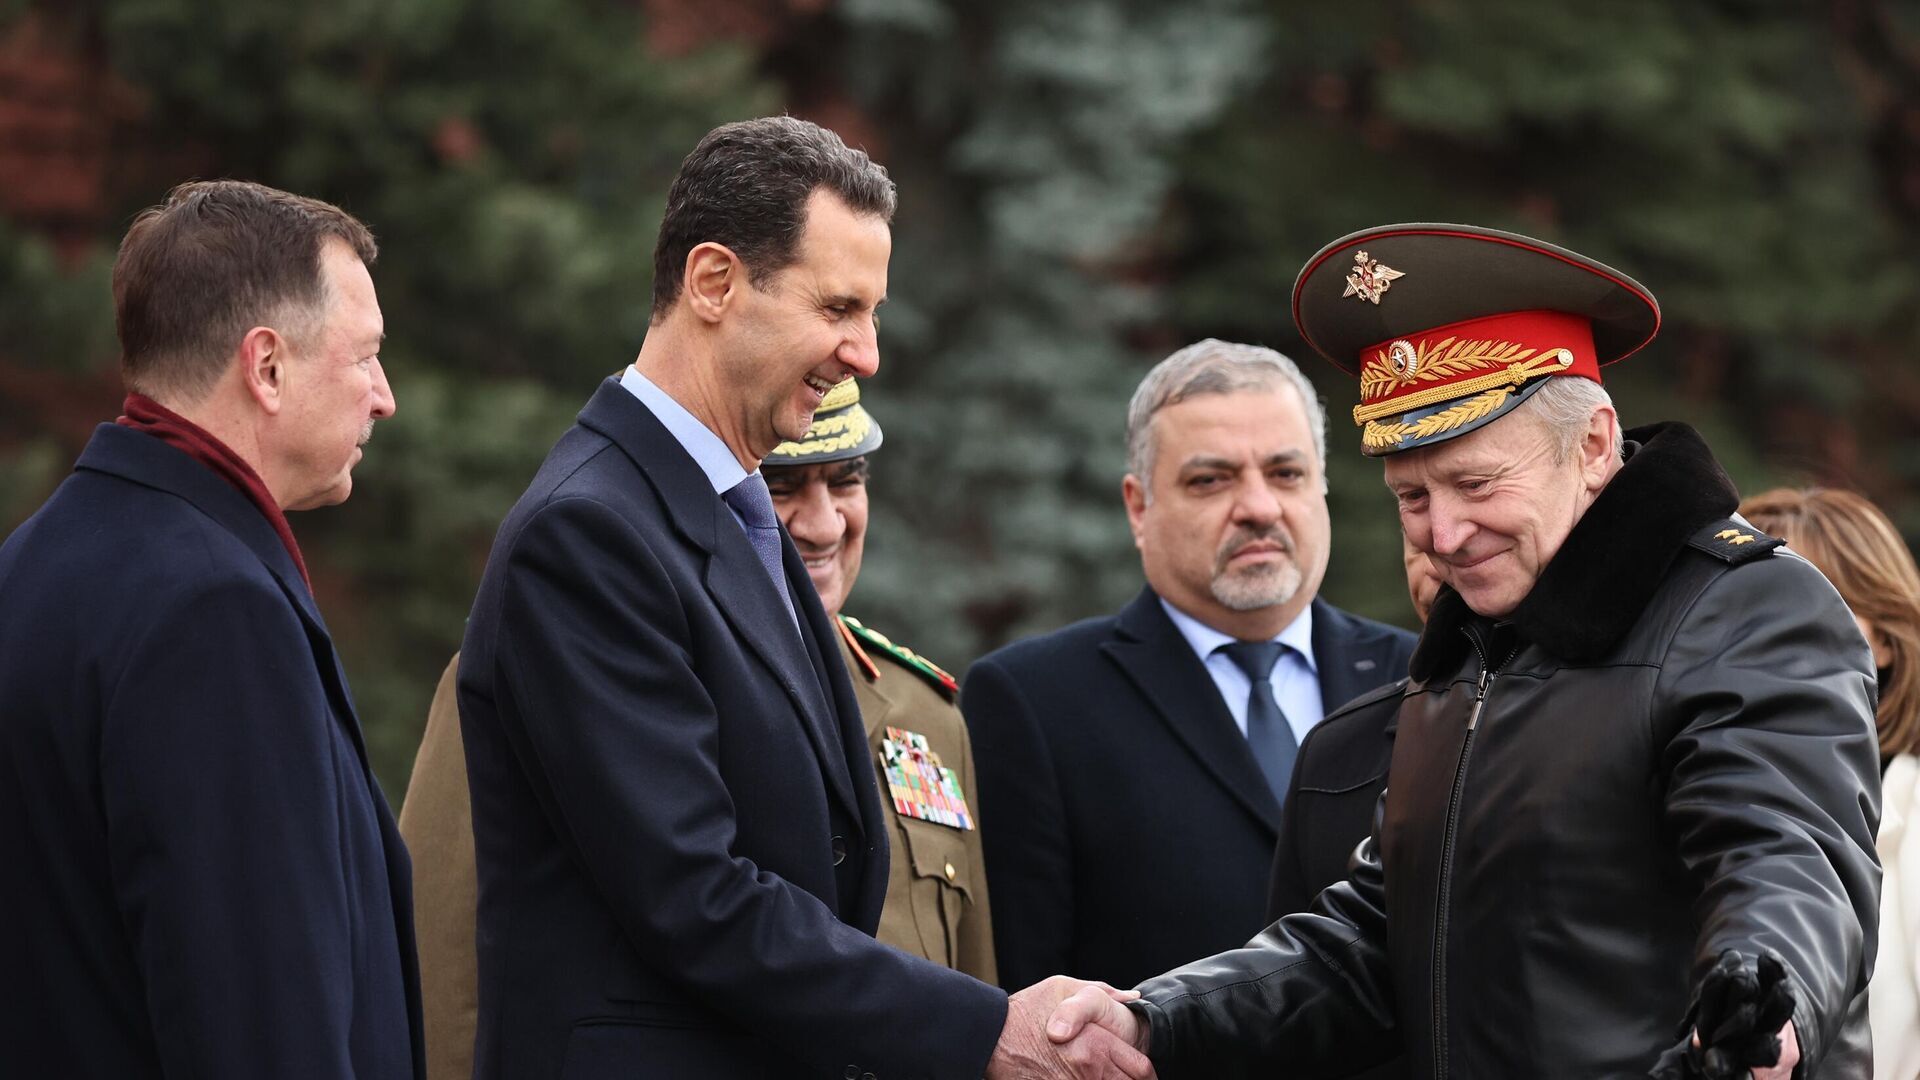 بشار اسد: سوریه مرزهای جدید روسیه پس از پیوستن مناطق جدید را به رسمیت می شناسد / گسترش حضور نظامی روسیه در سوریه خوب است / حضور نظامی روسیه نباید موقتی باشد